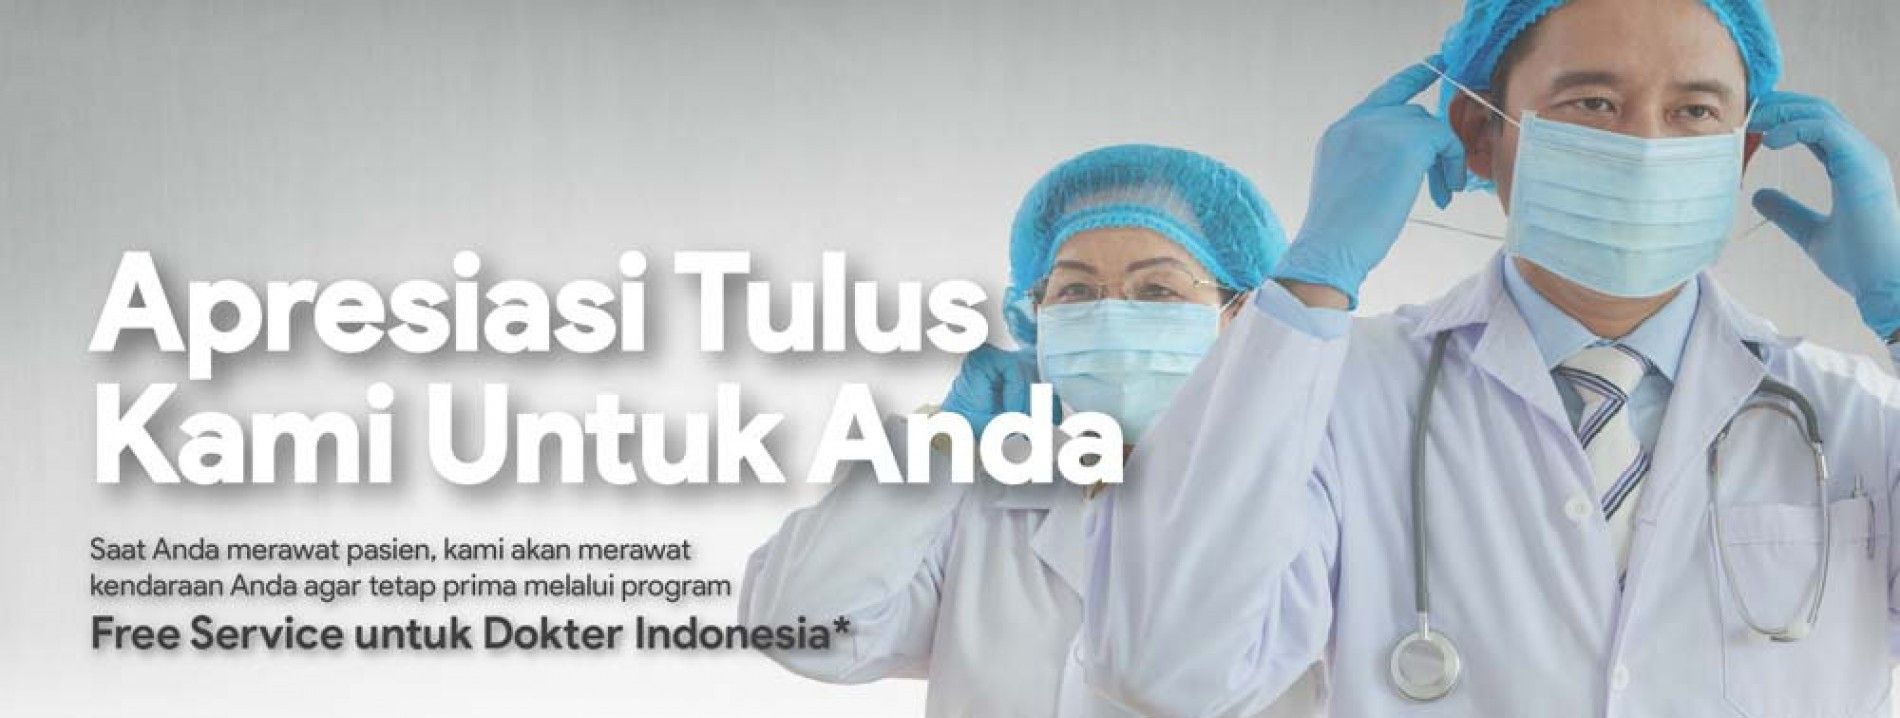 Apresiasi Honda untuk Dokter Indonesia